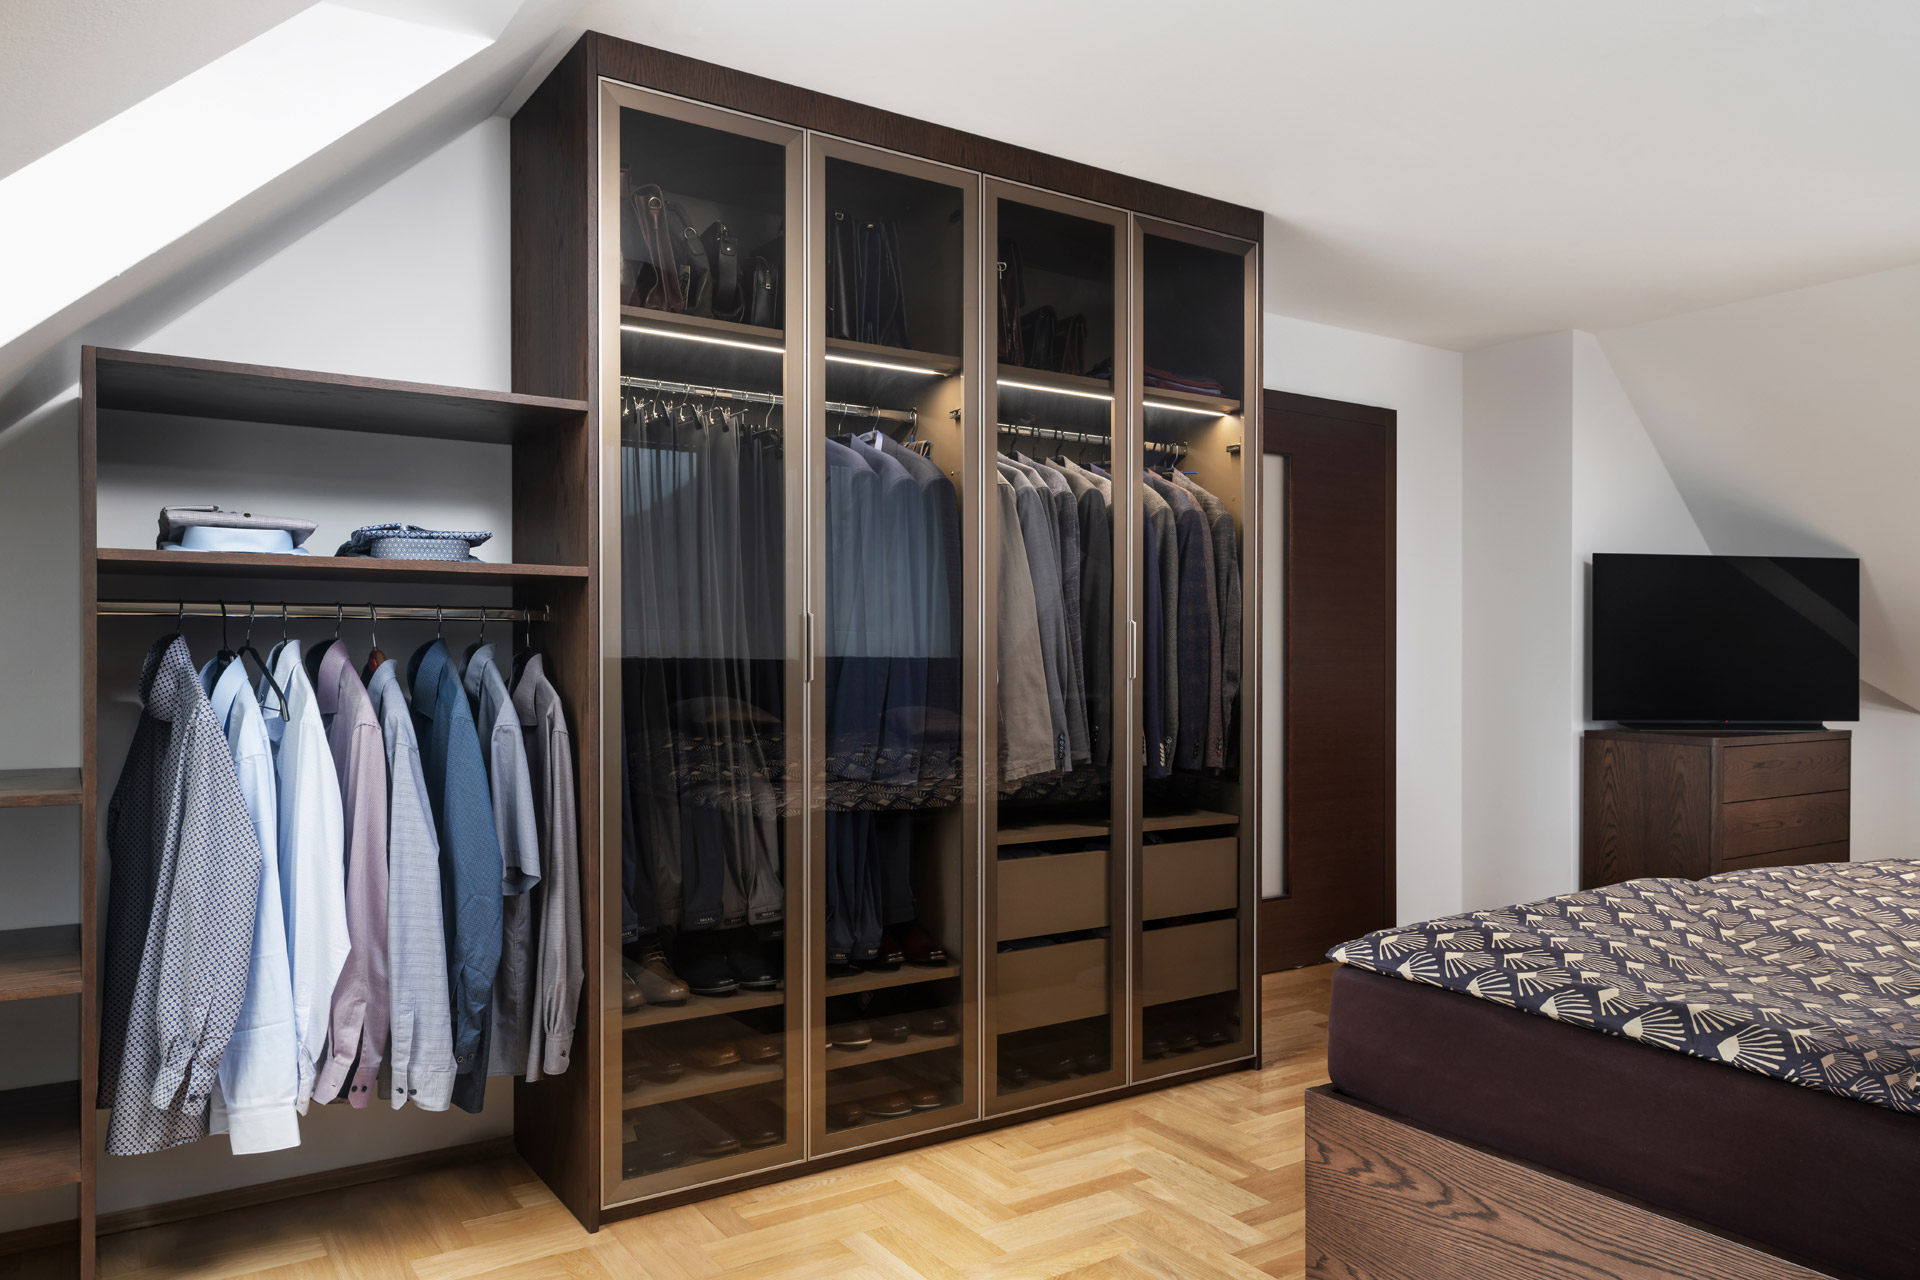 Hanák Möbel Realisierung von Garderobe und Kleiderschrank